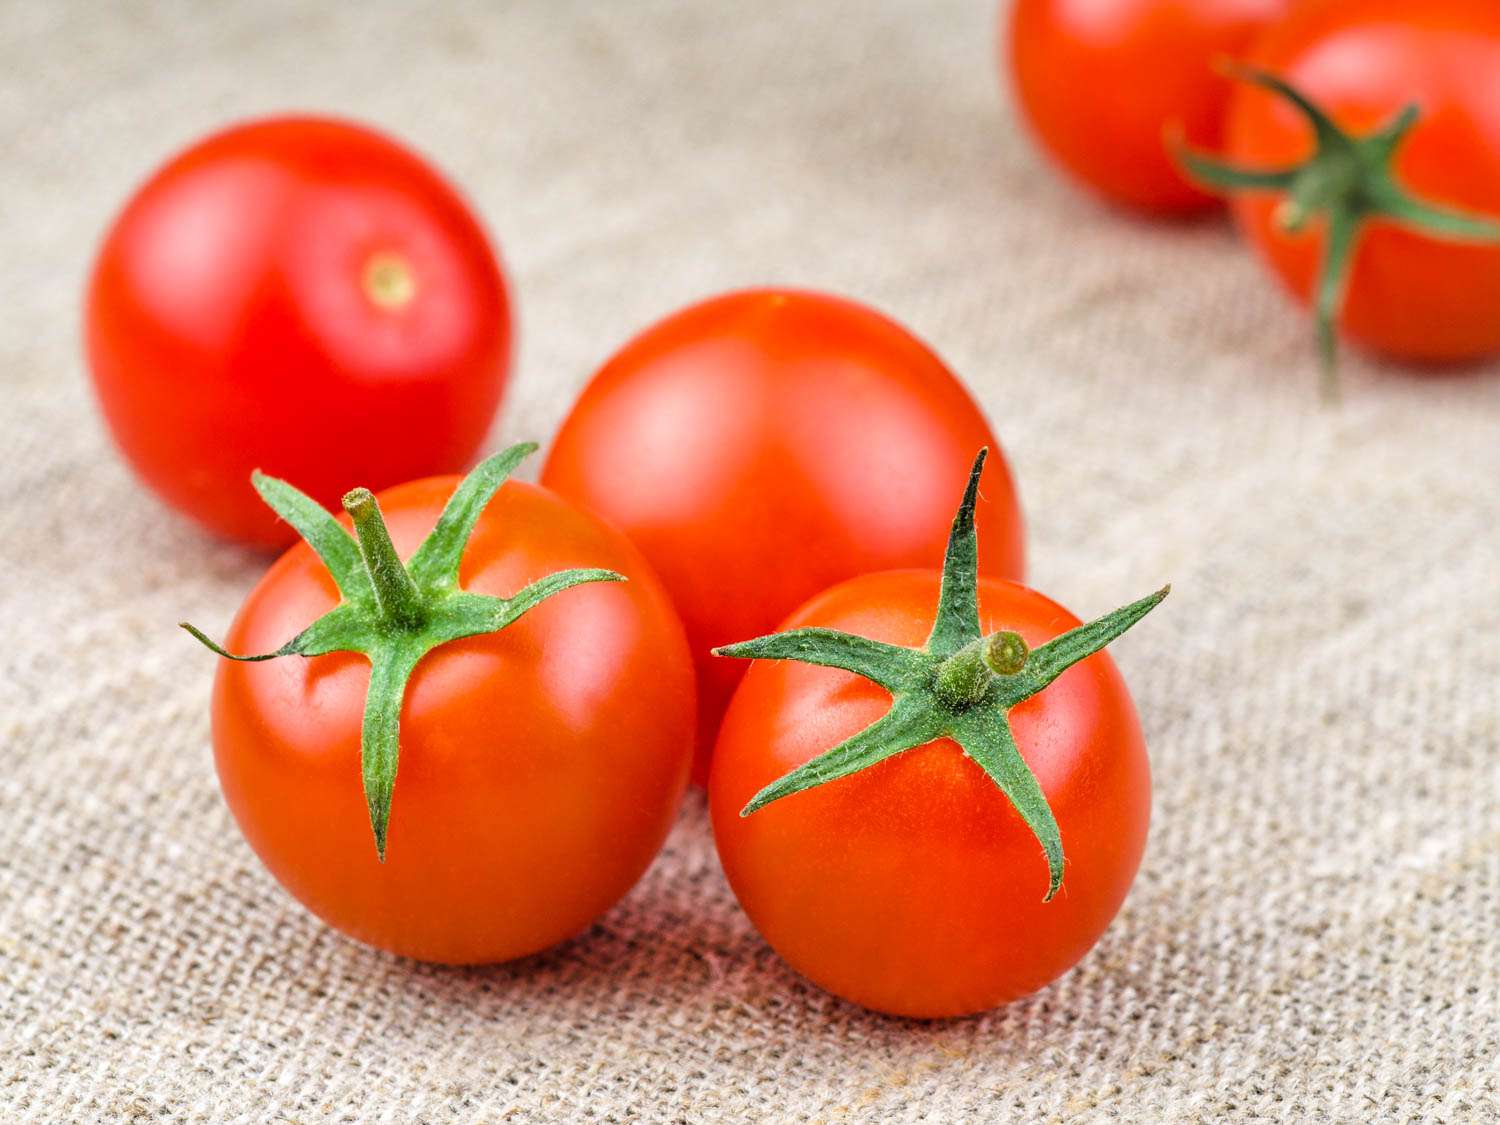 20150622-tomato-guide-cherry-shutterstock.jpg